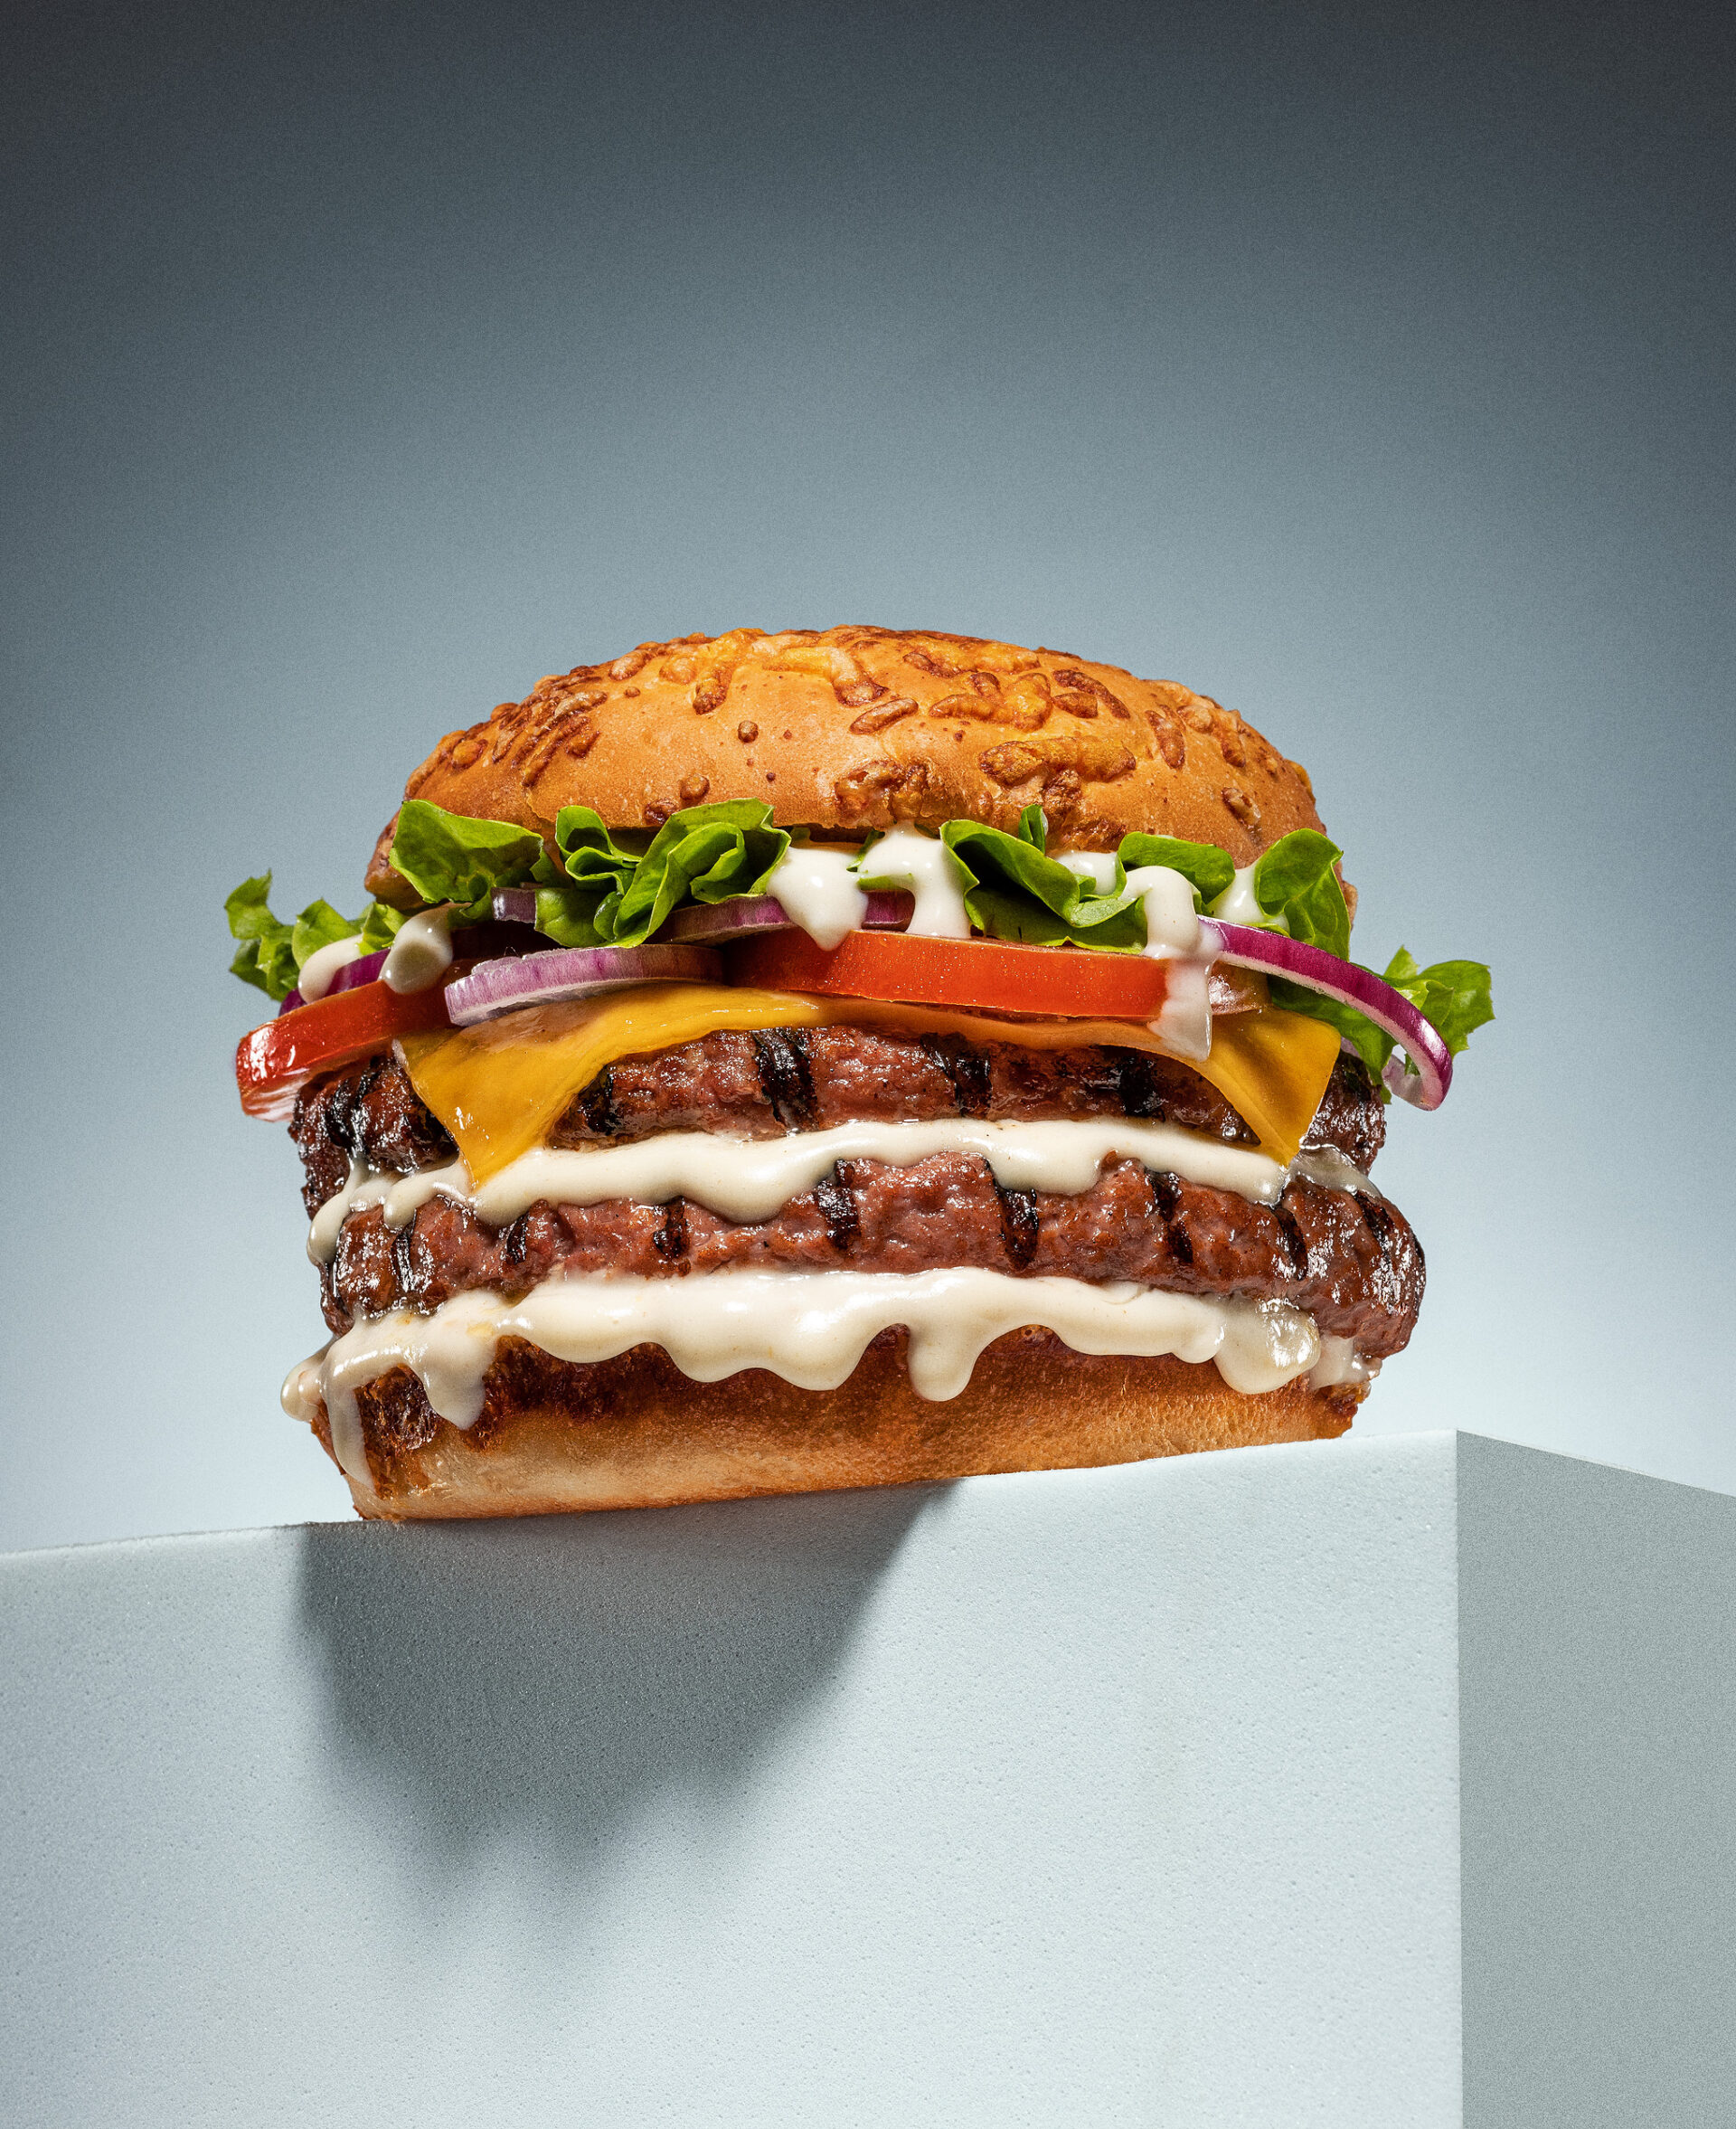 Home economist & food stylist Madrid Burger foodporn